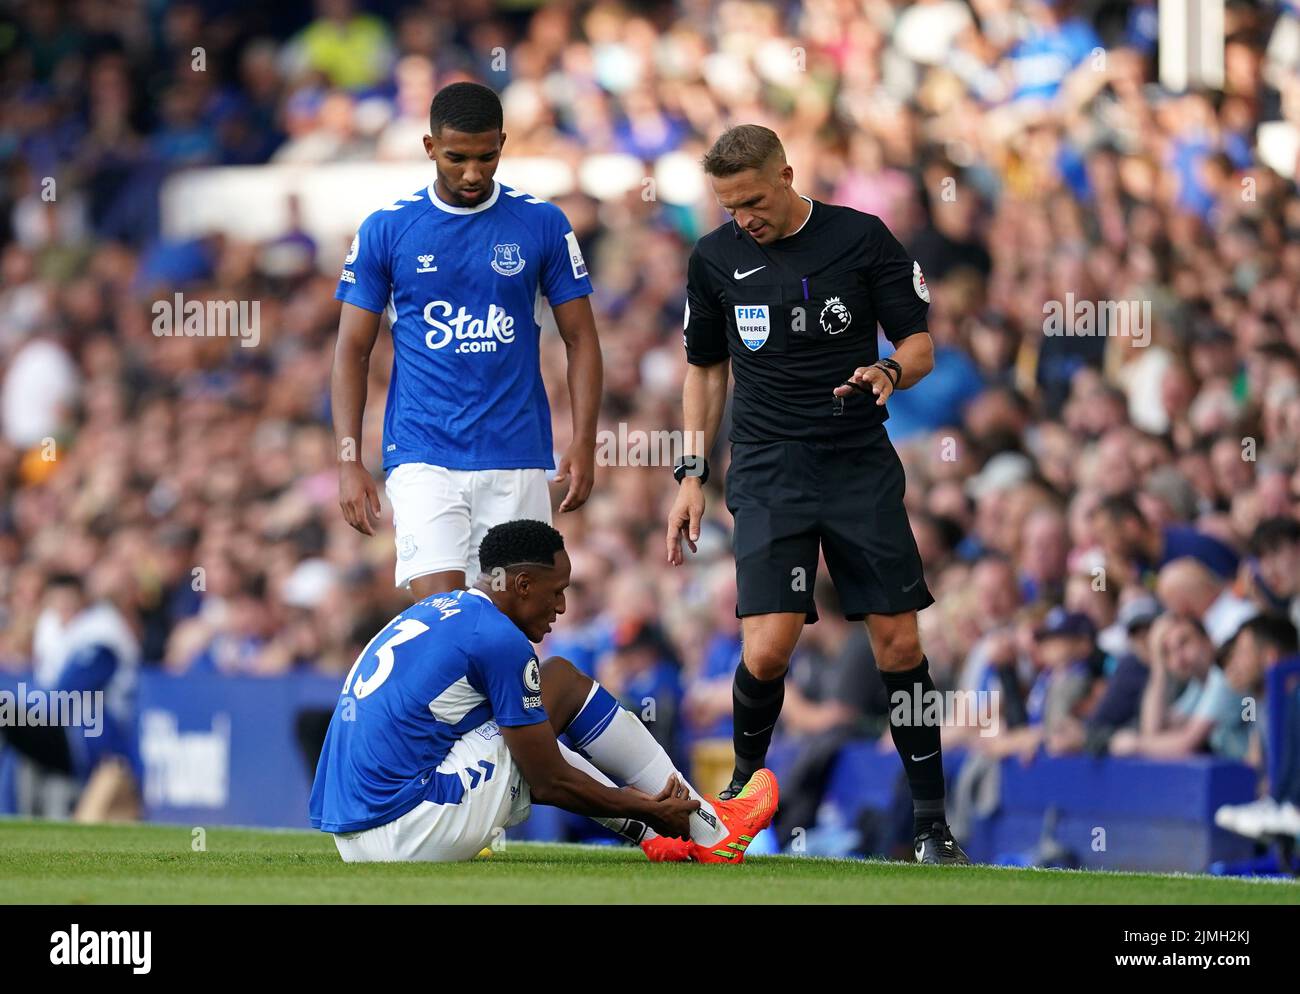 Evertons Yerry Mina reagiert, nachdem er sich während des Spiels der Premier League im Goodison Park, Liverpool, verletzt hat. Bilddatum: Samstag, 6. August 2022. Stockfoto